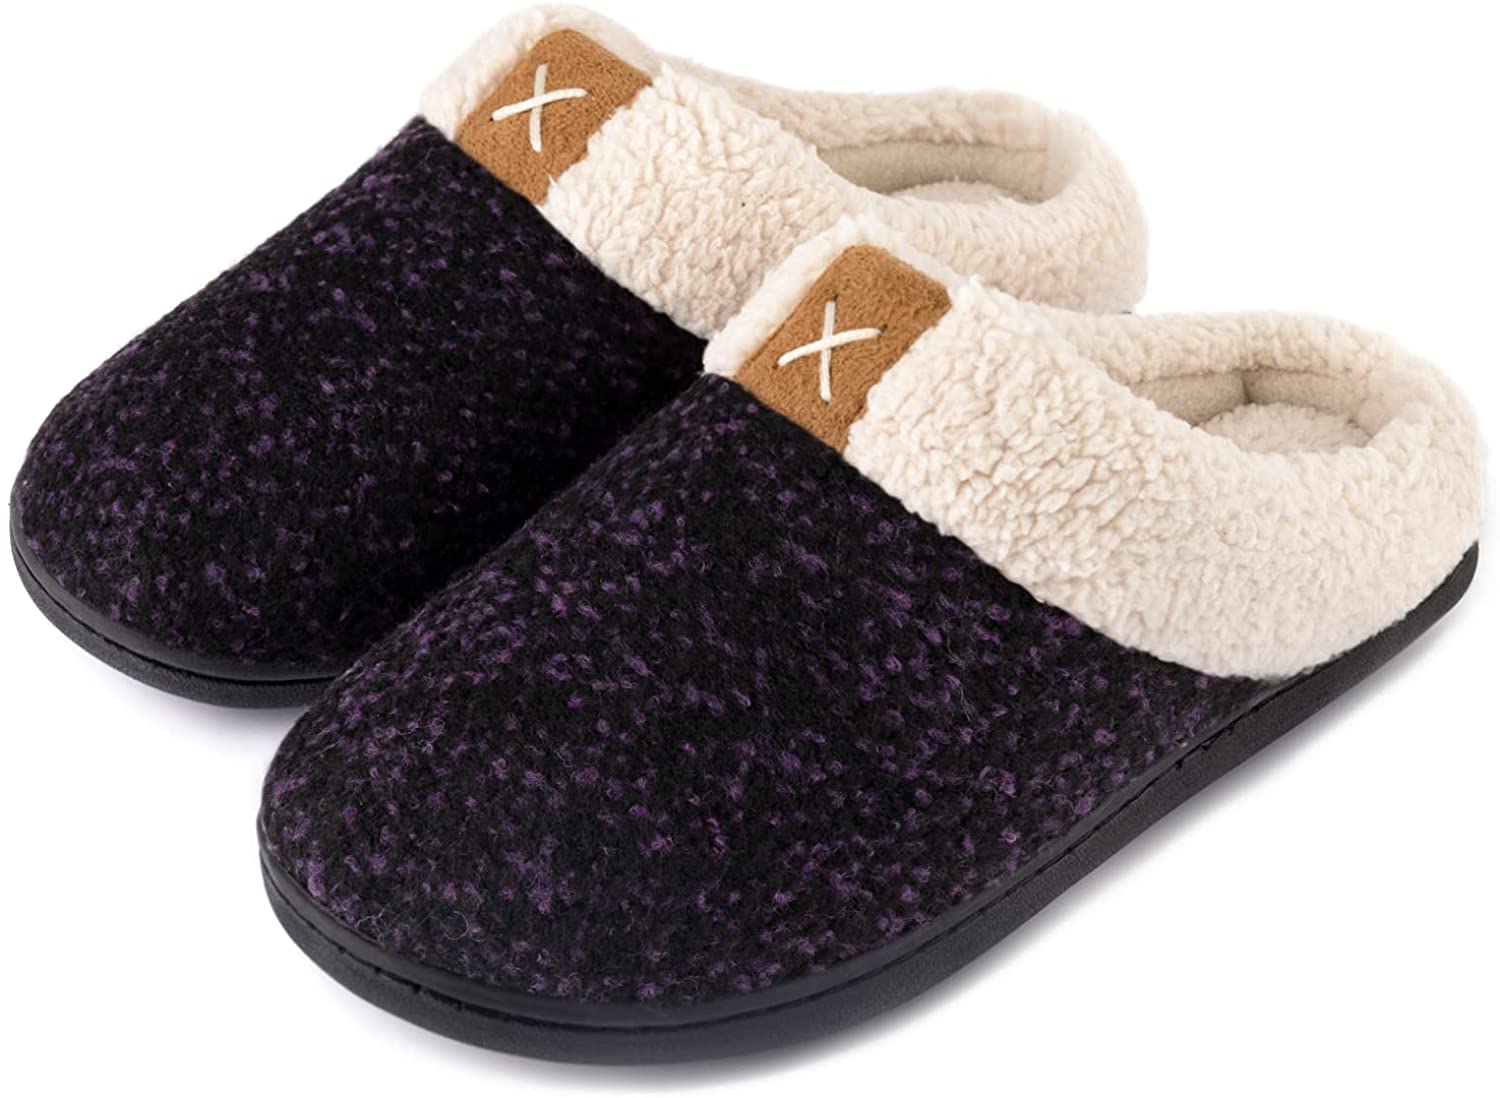 Indoor/outdoor memory foam slippers